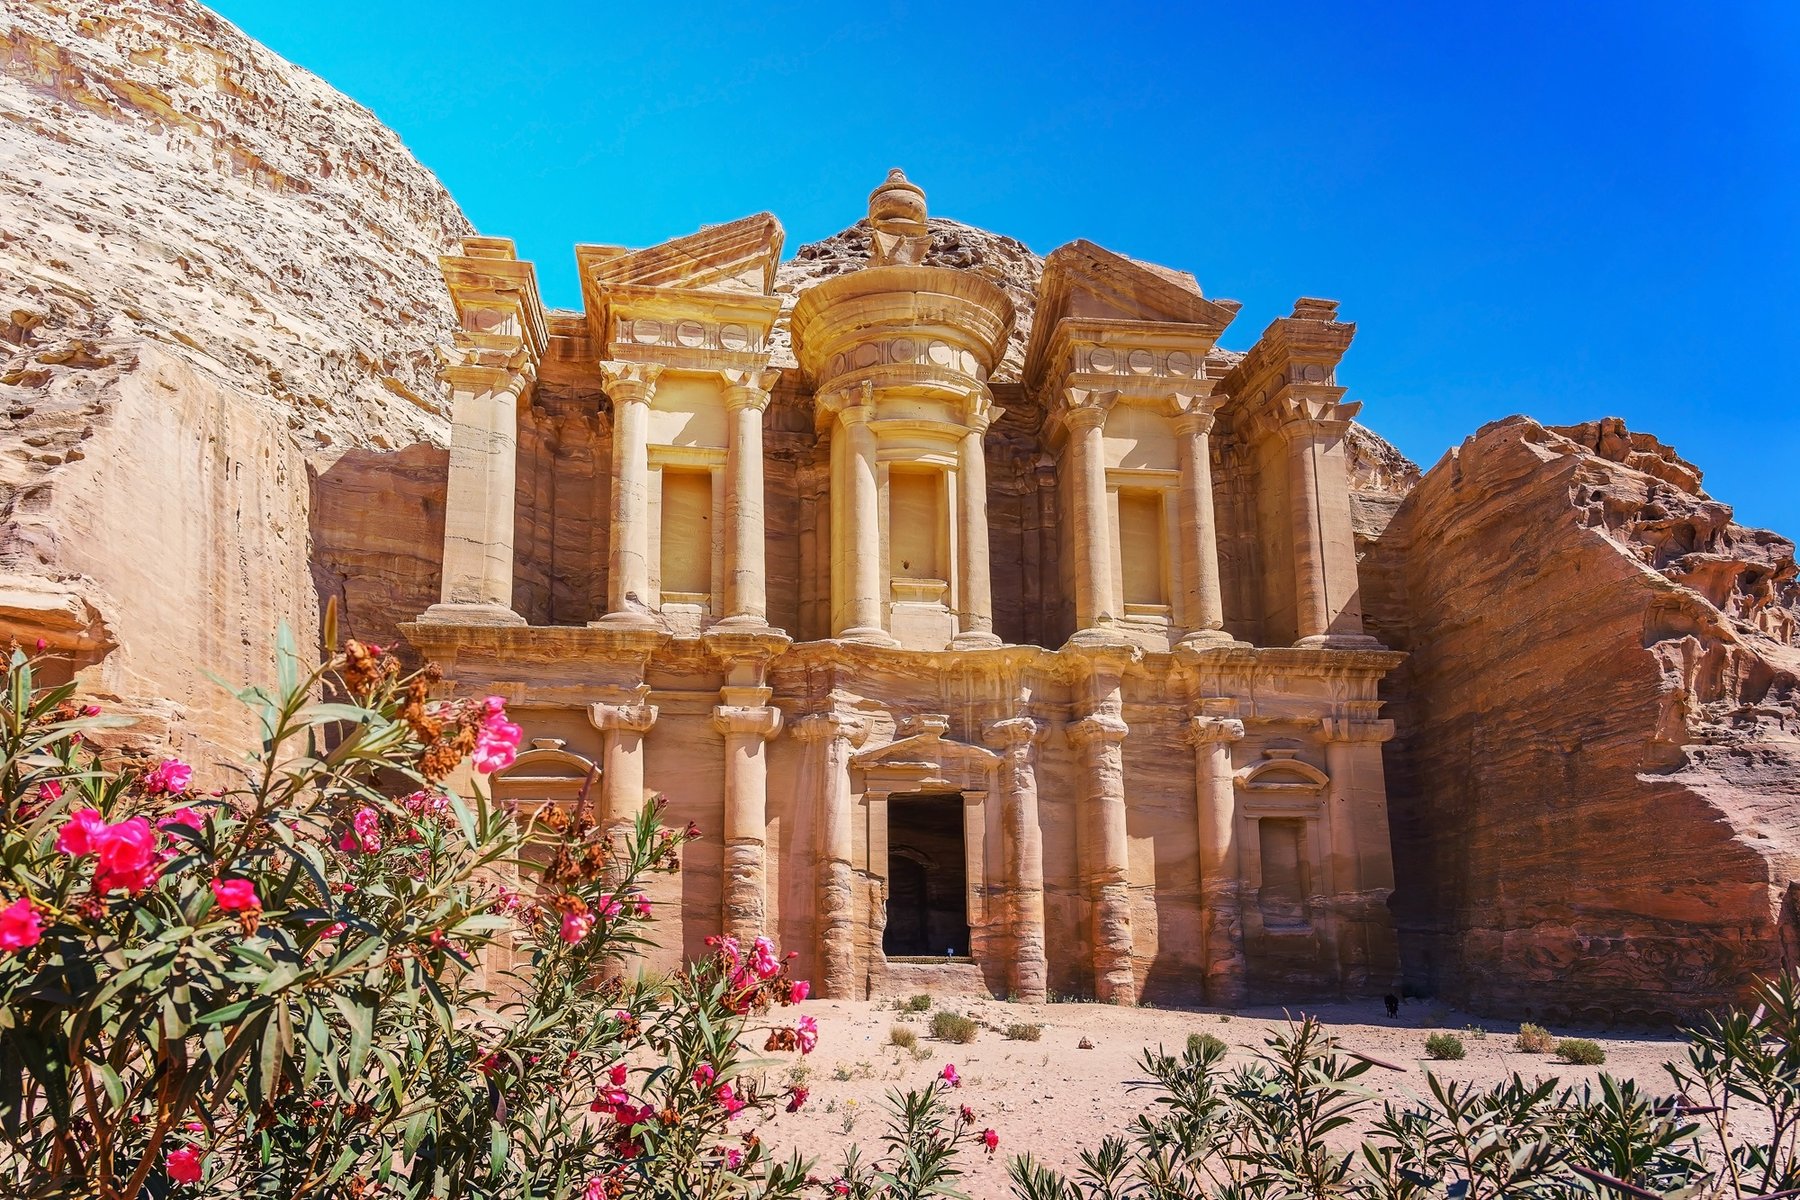 Monastere de Petra en Jordanie